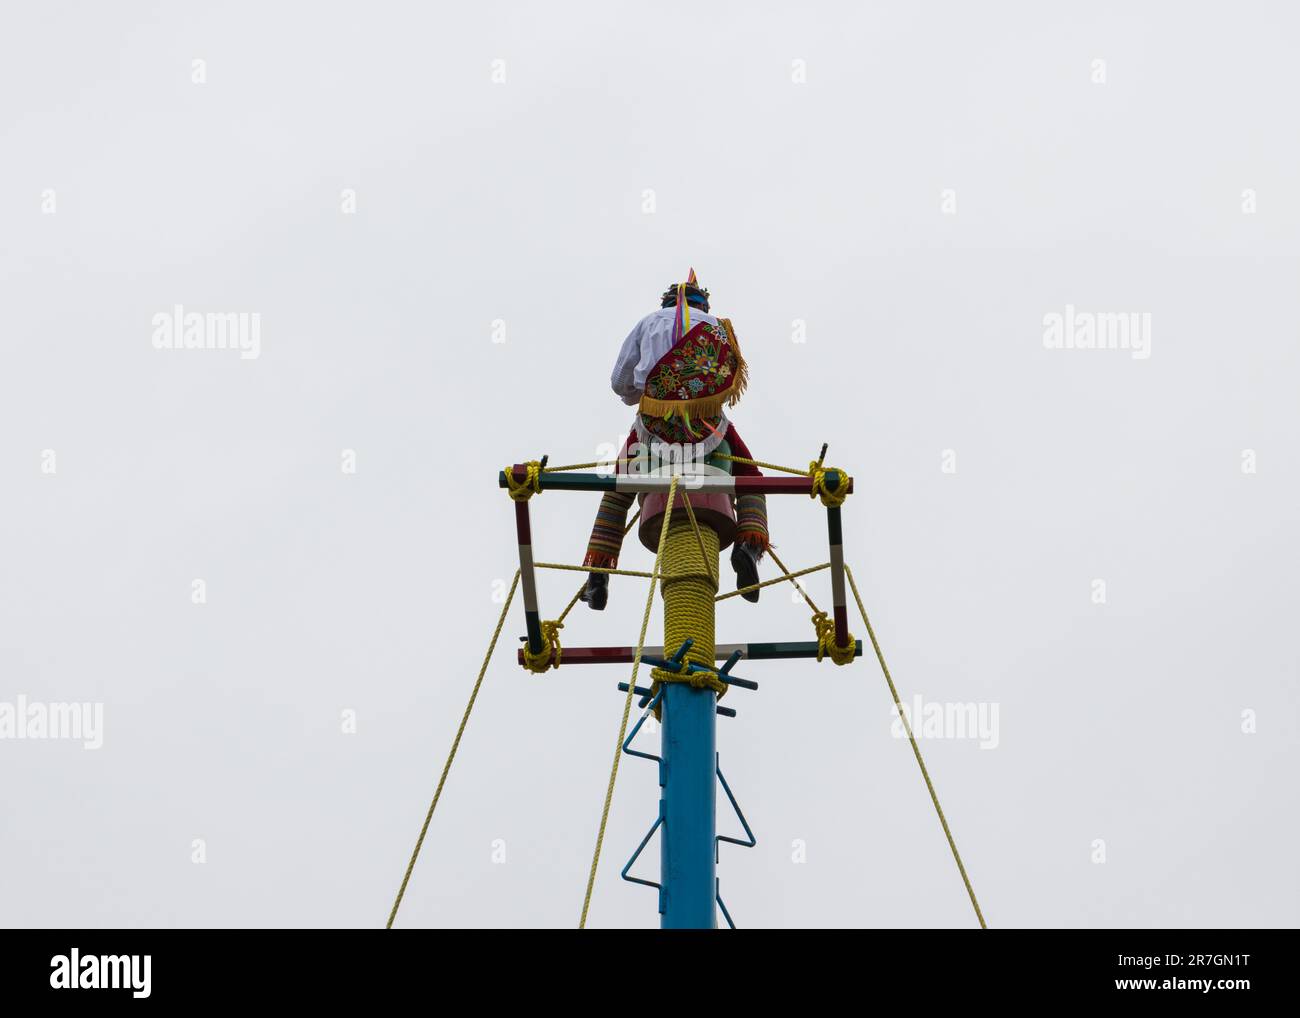 Farbenfrohe Flyer, die den traditionellen Tanz der Voladores de Papantla bewerben, der sich in der Kulturerbestätte Tajin in der Stadt Papant befindet Stockfoto